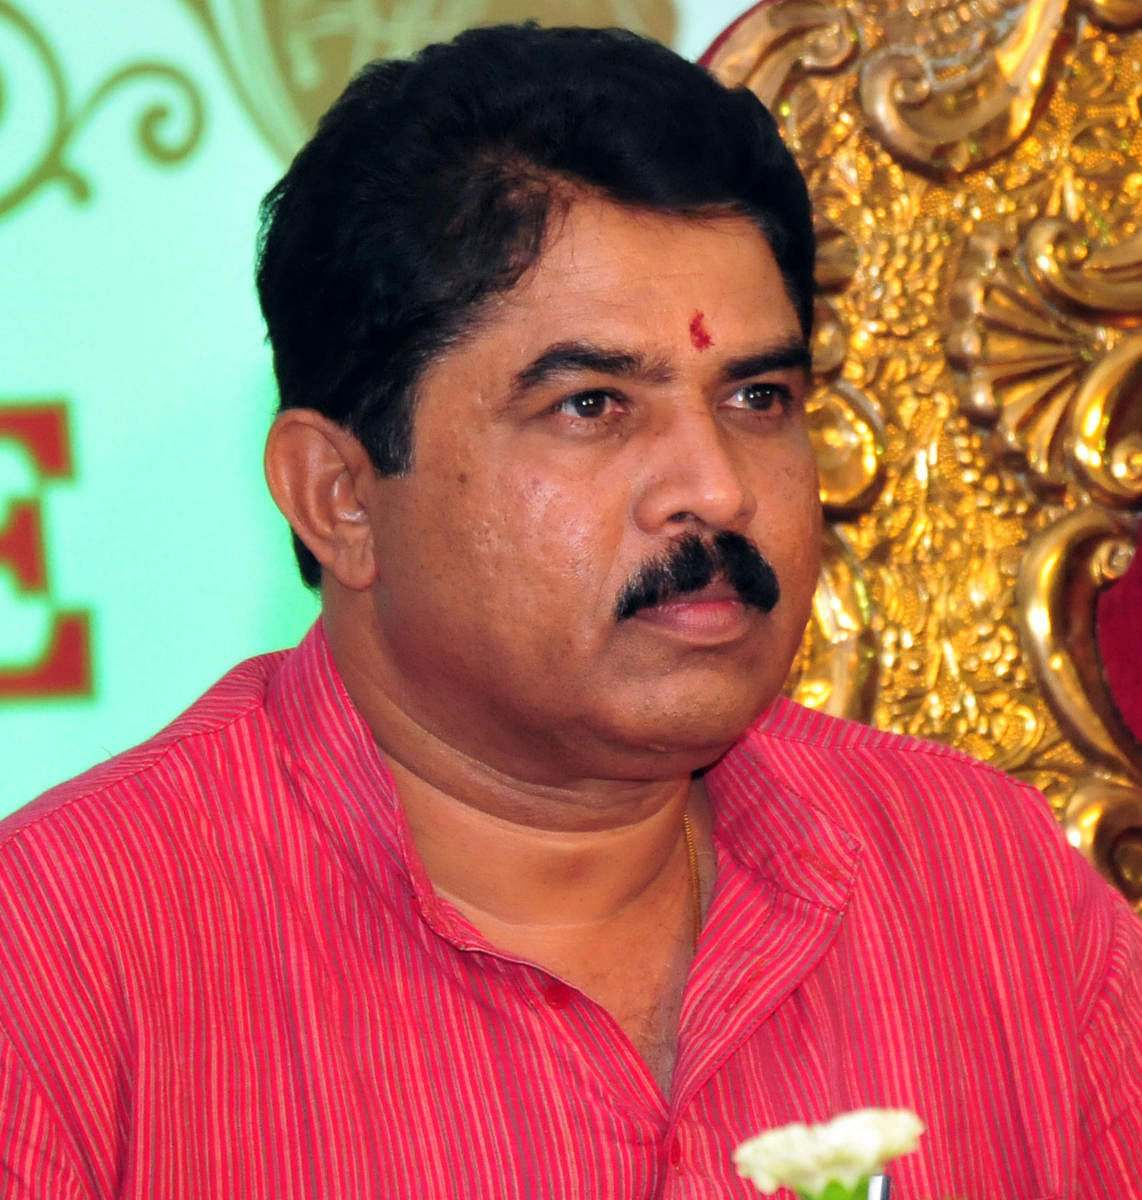 Siddaramaiah had plans to divide communities: Ashoka